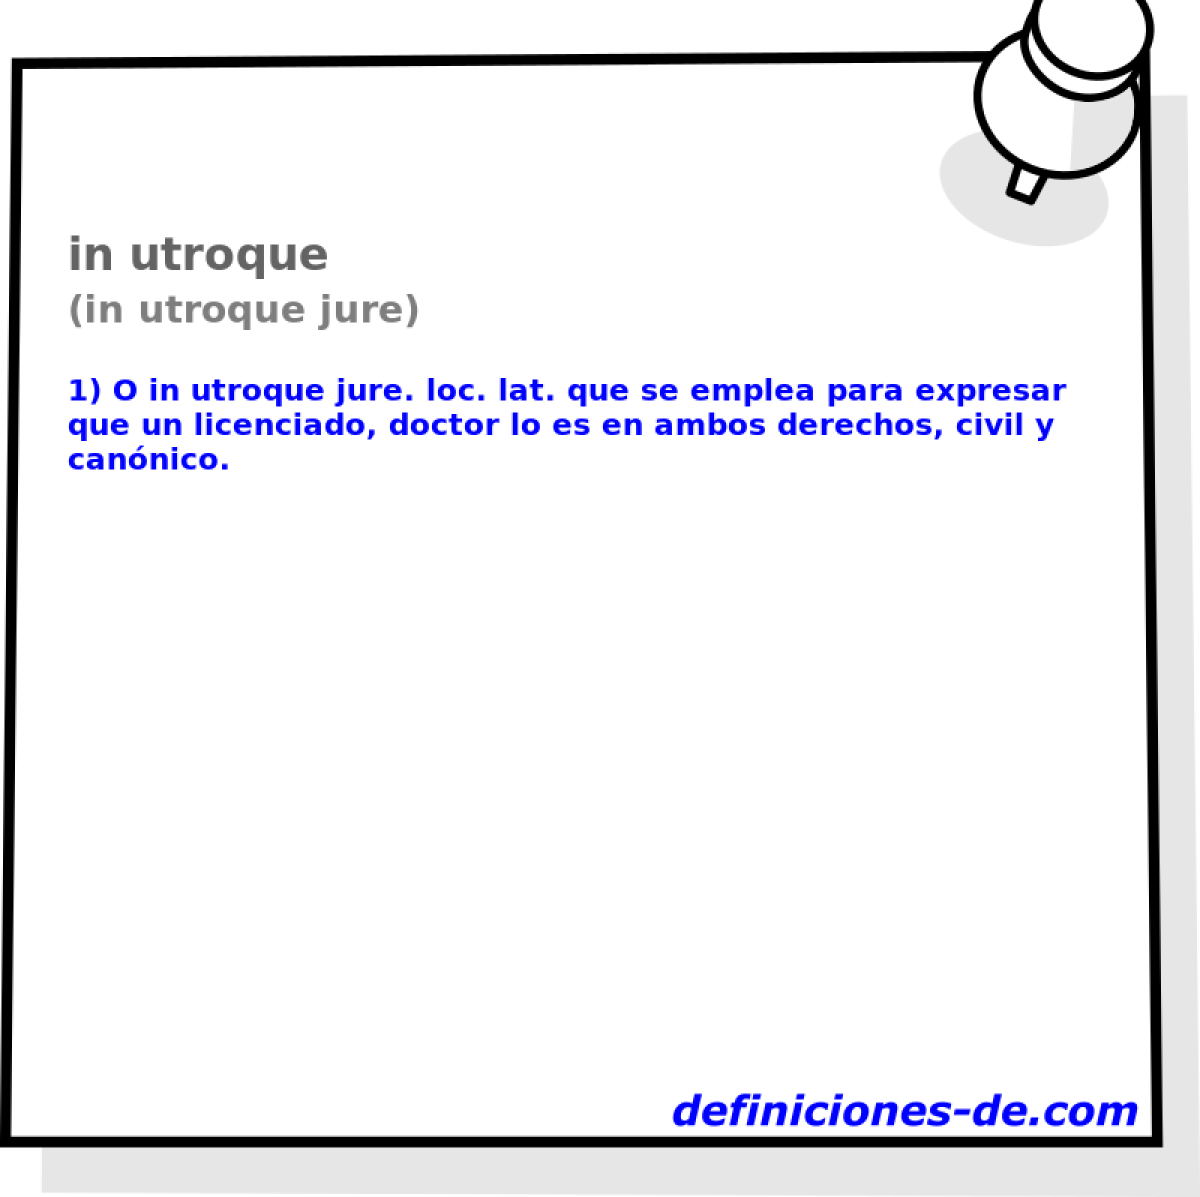 in utroque (in utroque jure)